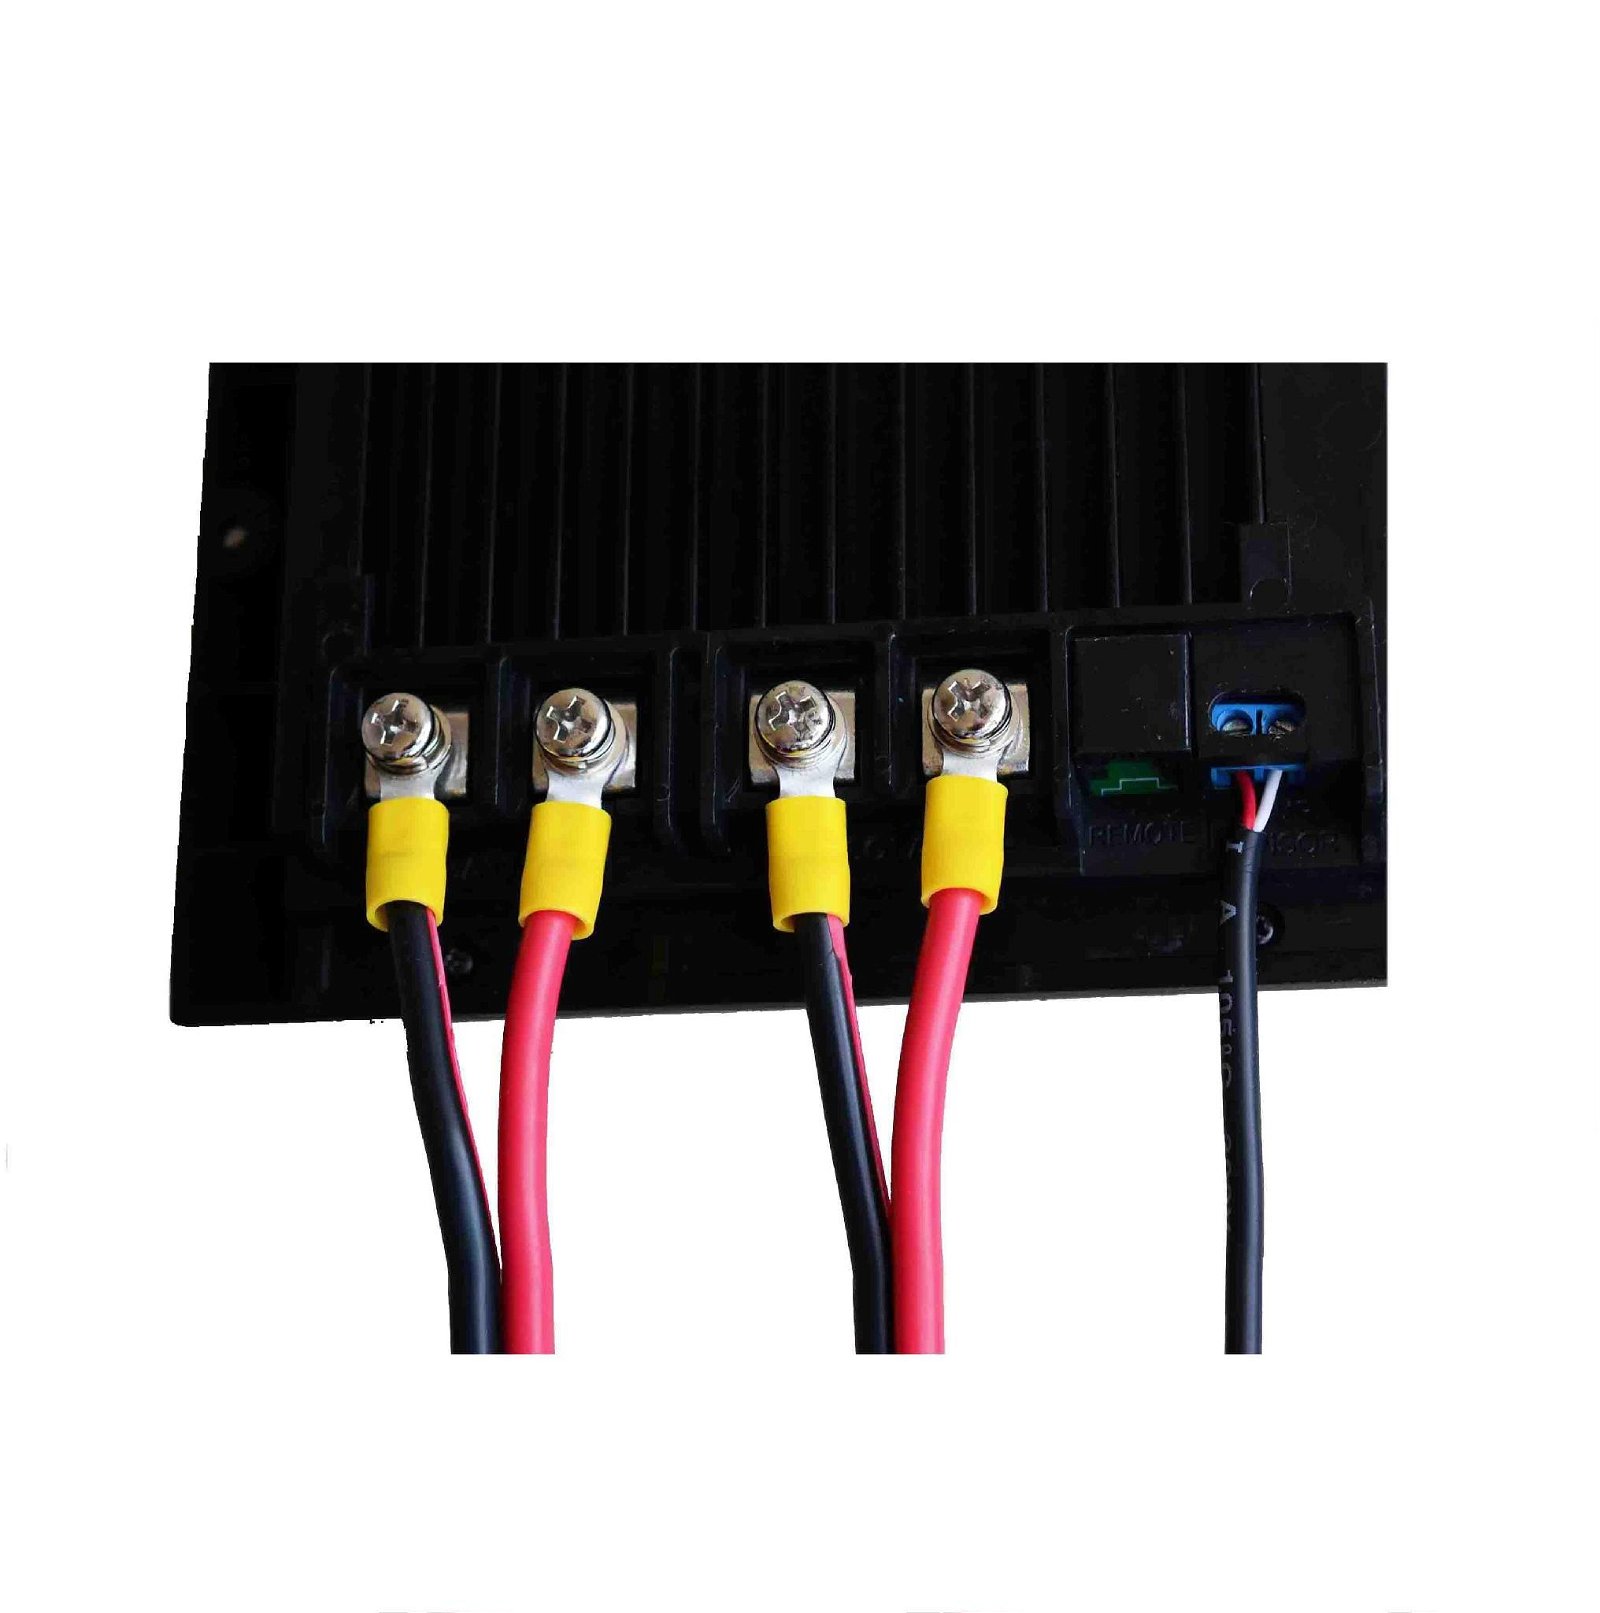 Digital 12v 20a price solar controller voltage regulator 4